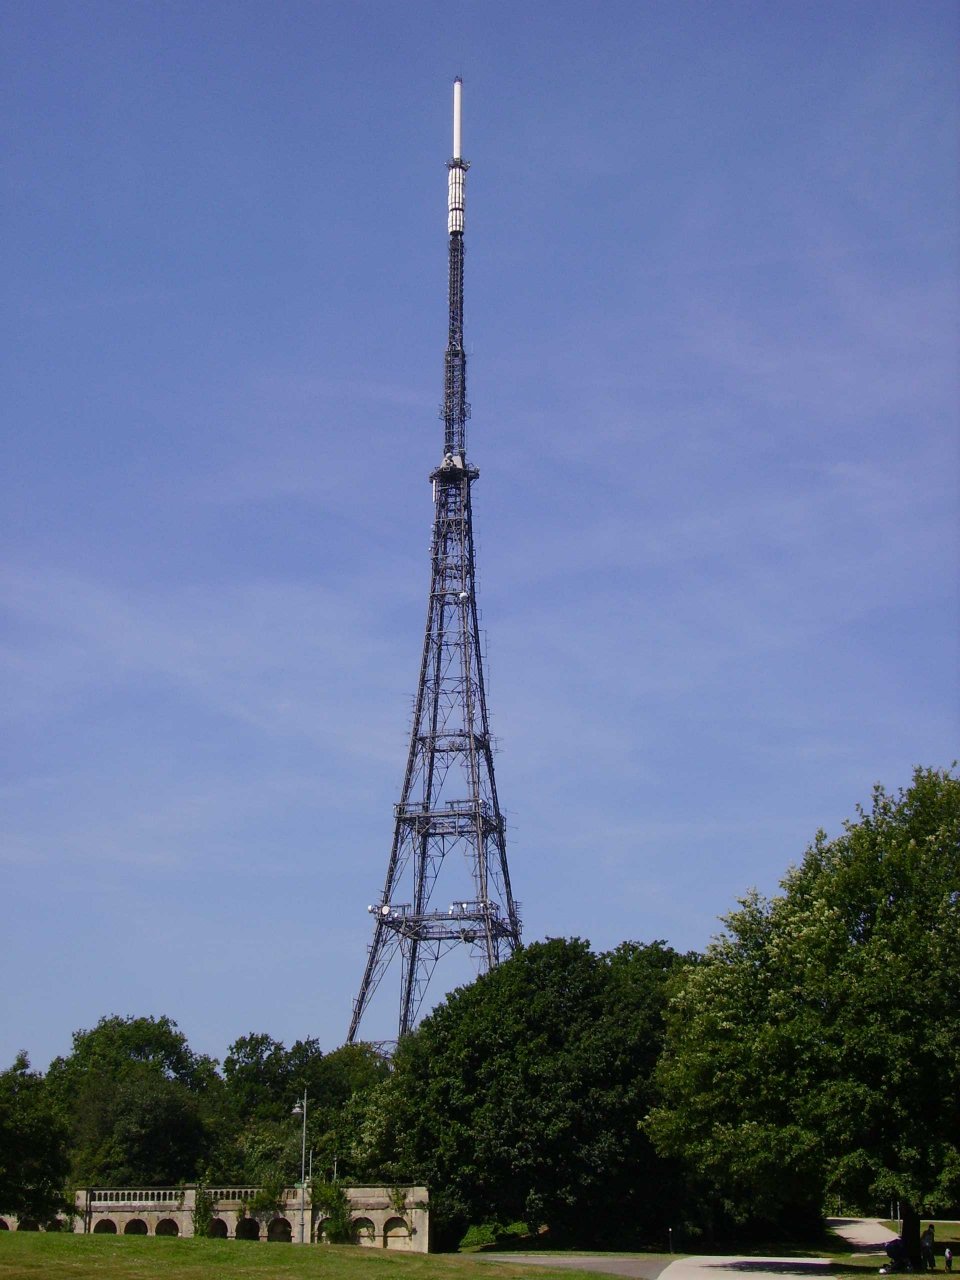  Crystal Palace Transmission Mast